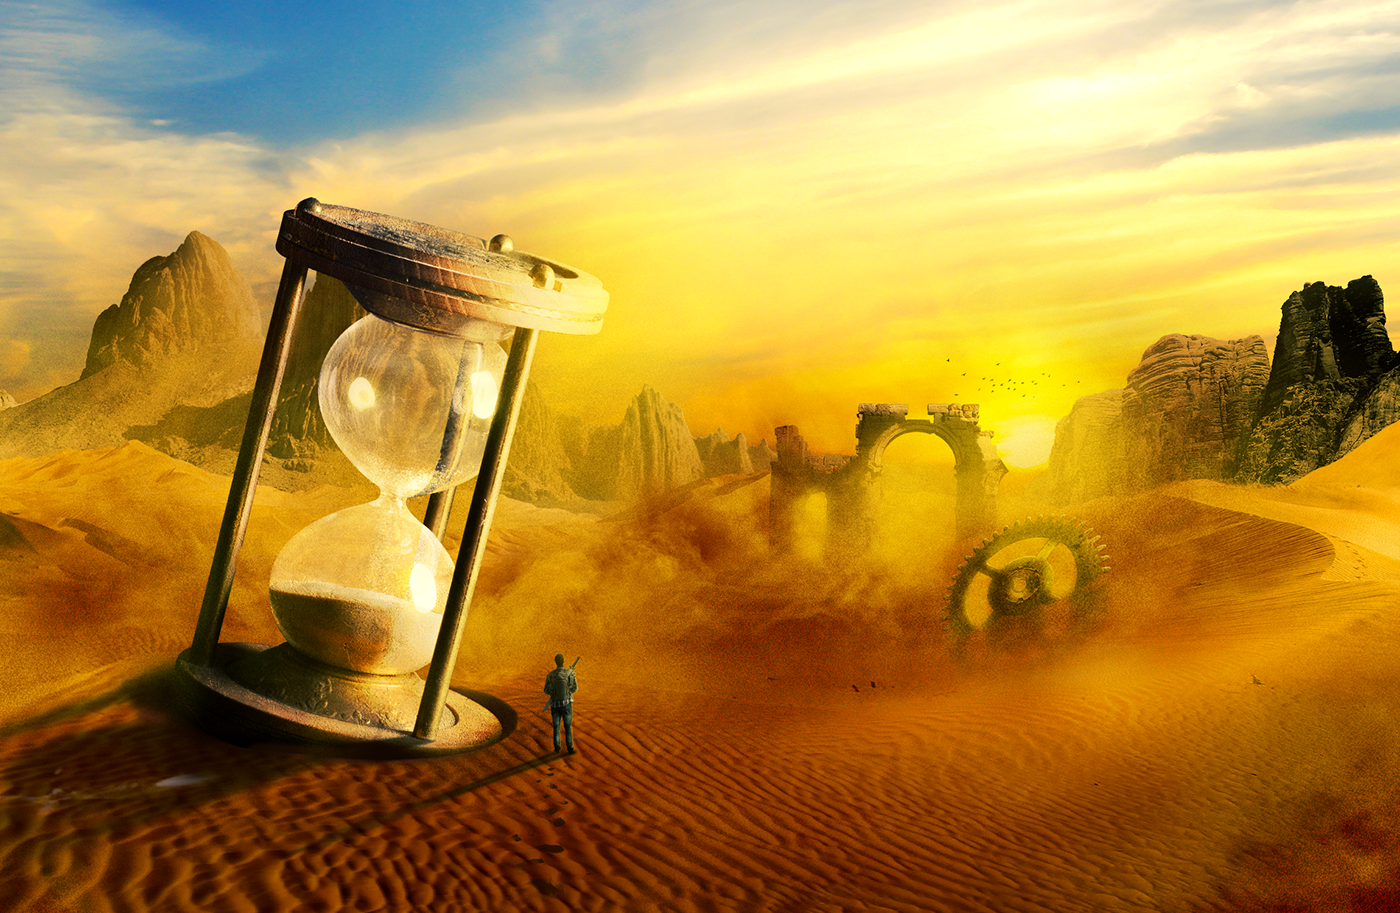 Дали пески времени. Песочные часы в пустыне. Пустыня мистика. Песочные часы в песке. Песочные часы ннапеске.